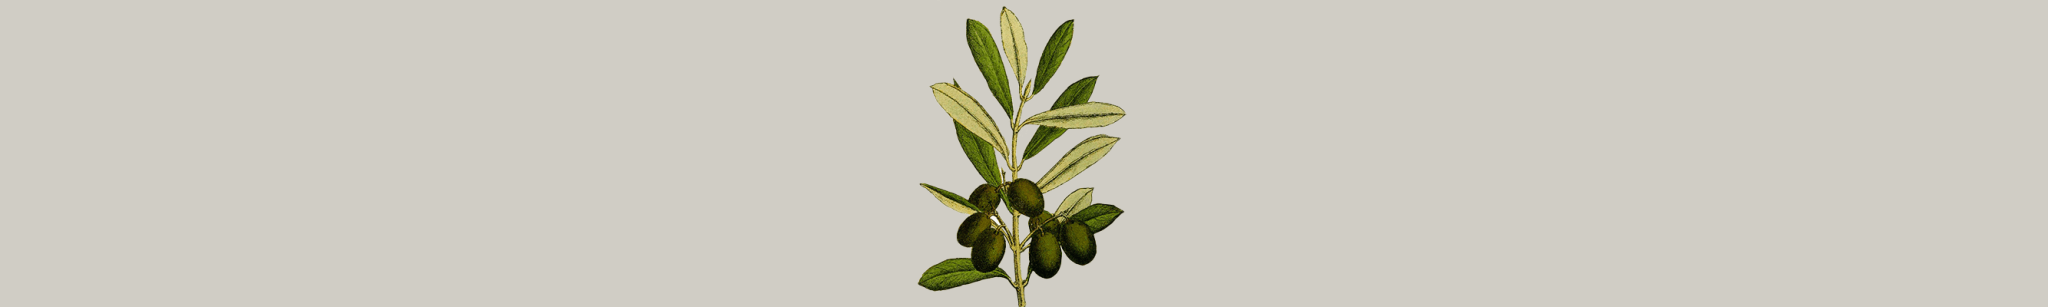 Huile d'olive - Panier des Sens